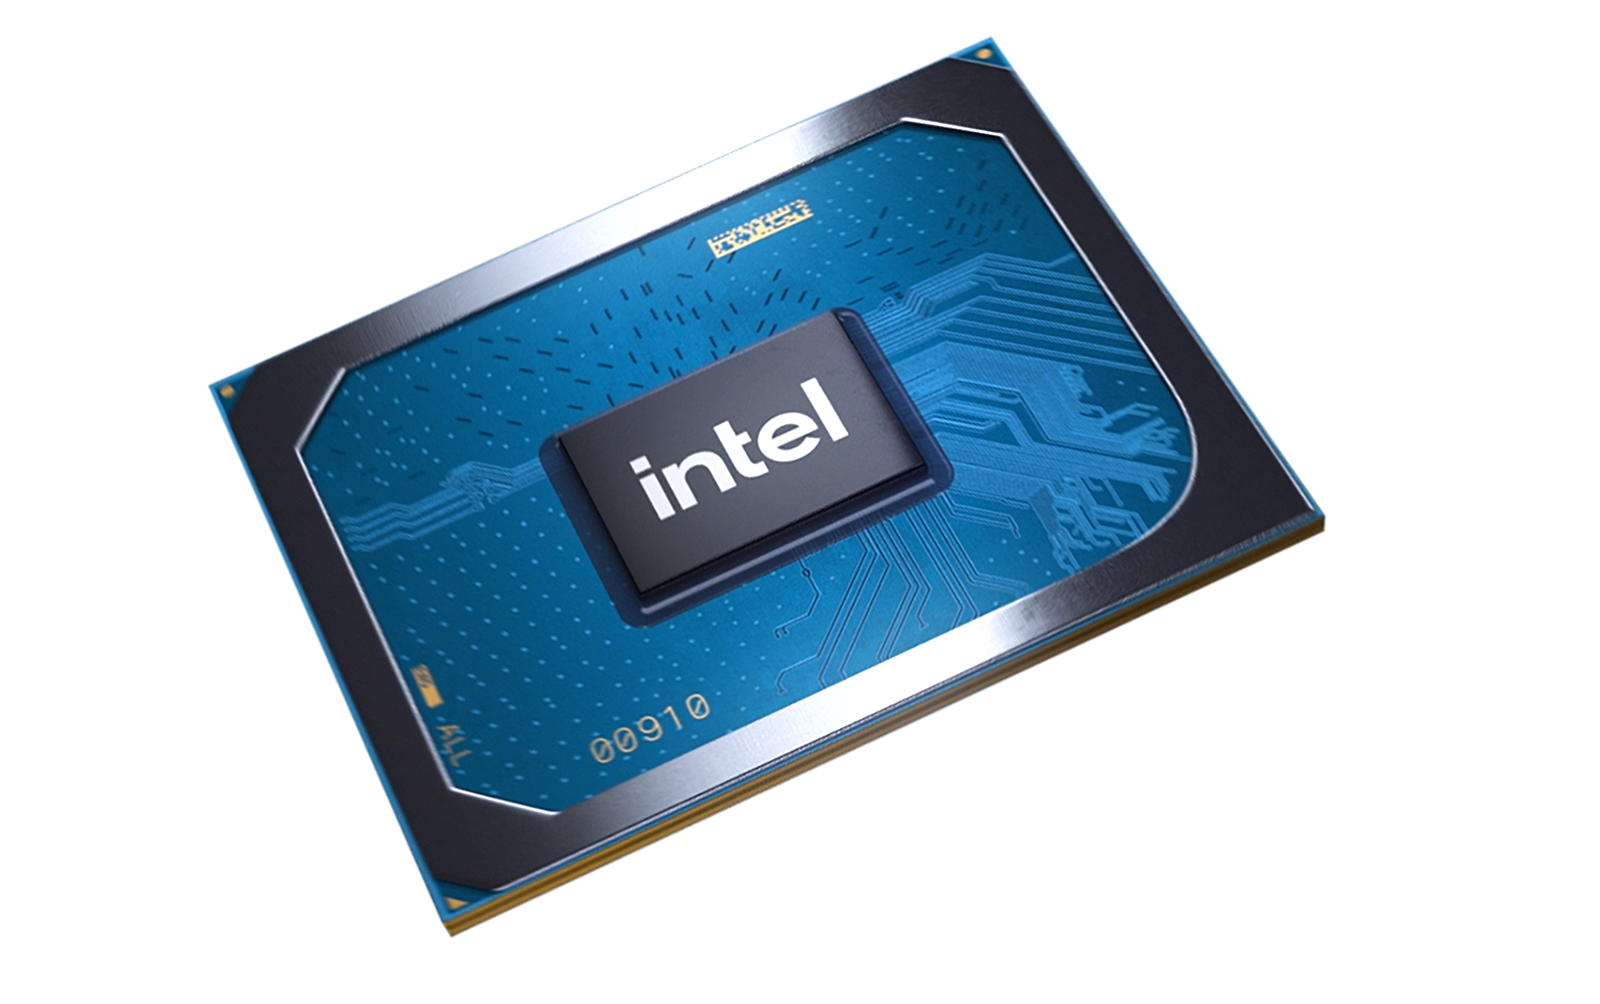 Процессор iris xe graphics. Интел Iris xe Graphics. Видеокарта Iris xe Graphics. Видеокарта Интел Ирис с Графикс. Intel Iris Pro 5200.